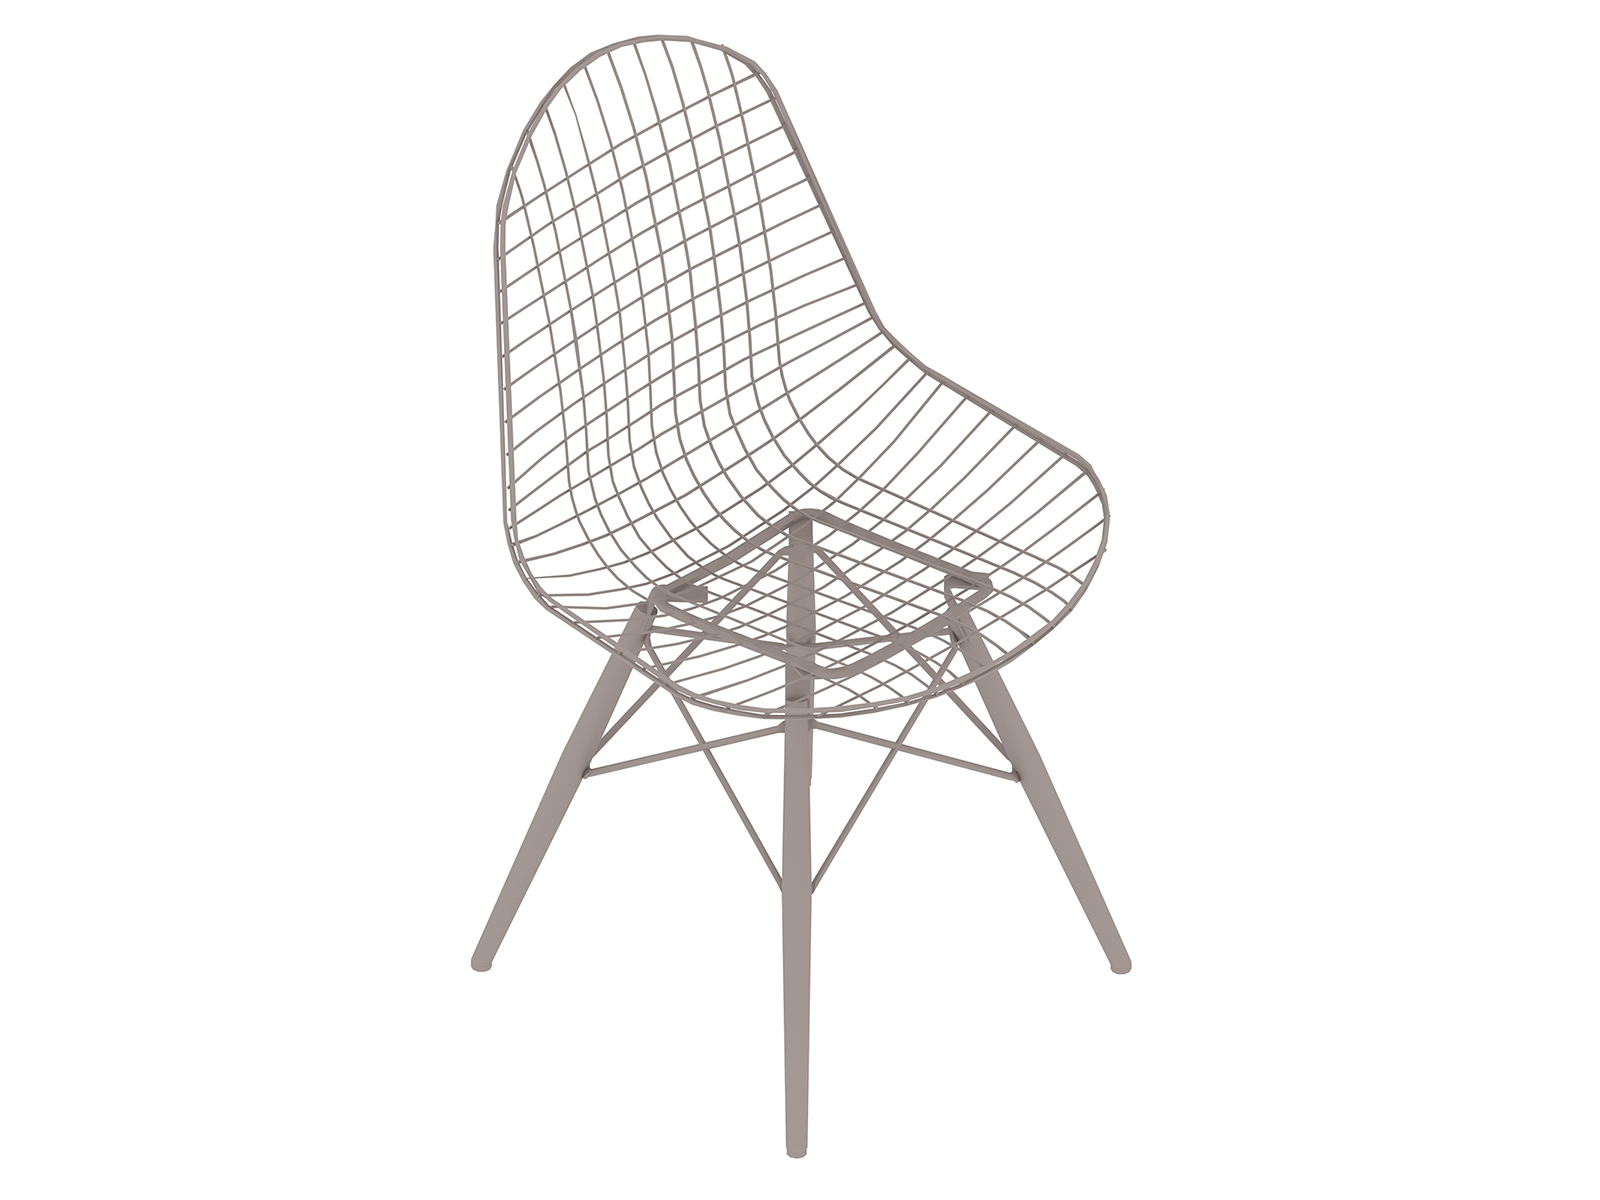 Una representación genérica - Silla Eames Wire con base de clavijas de soporte, sin tapizar